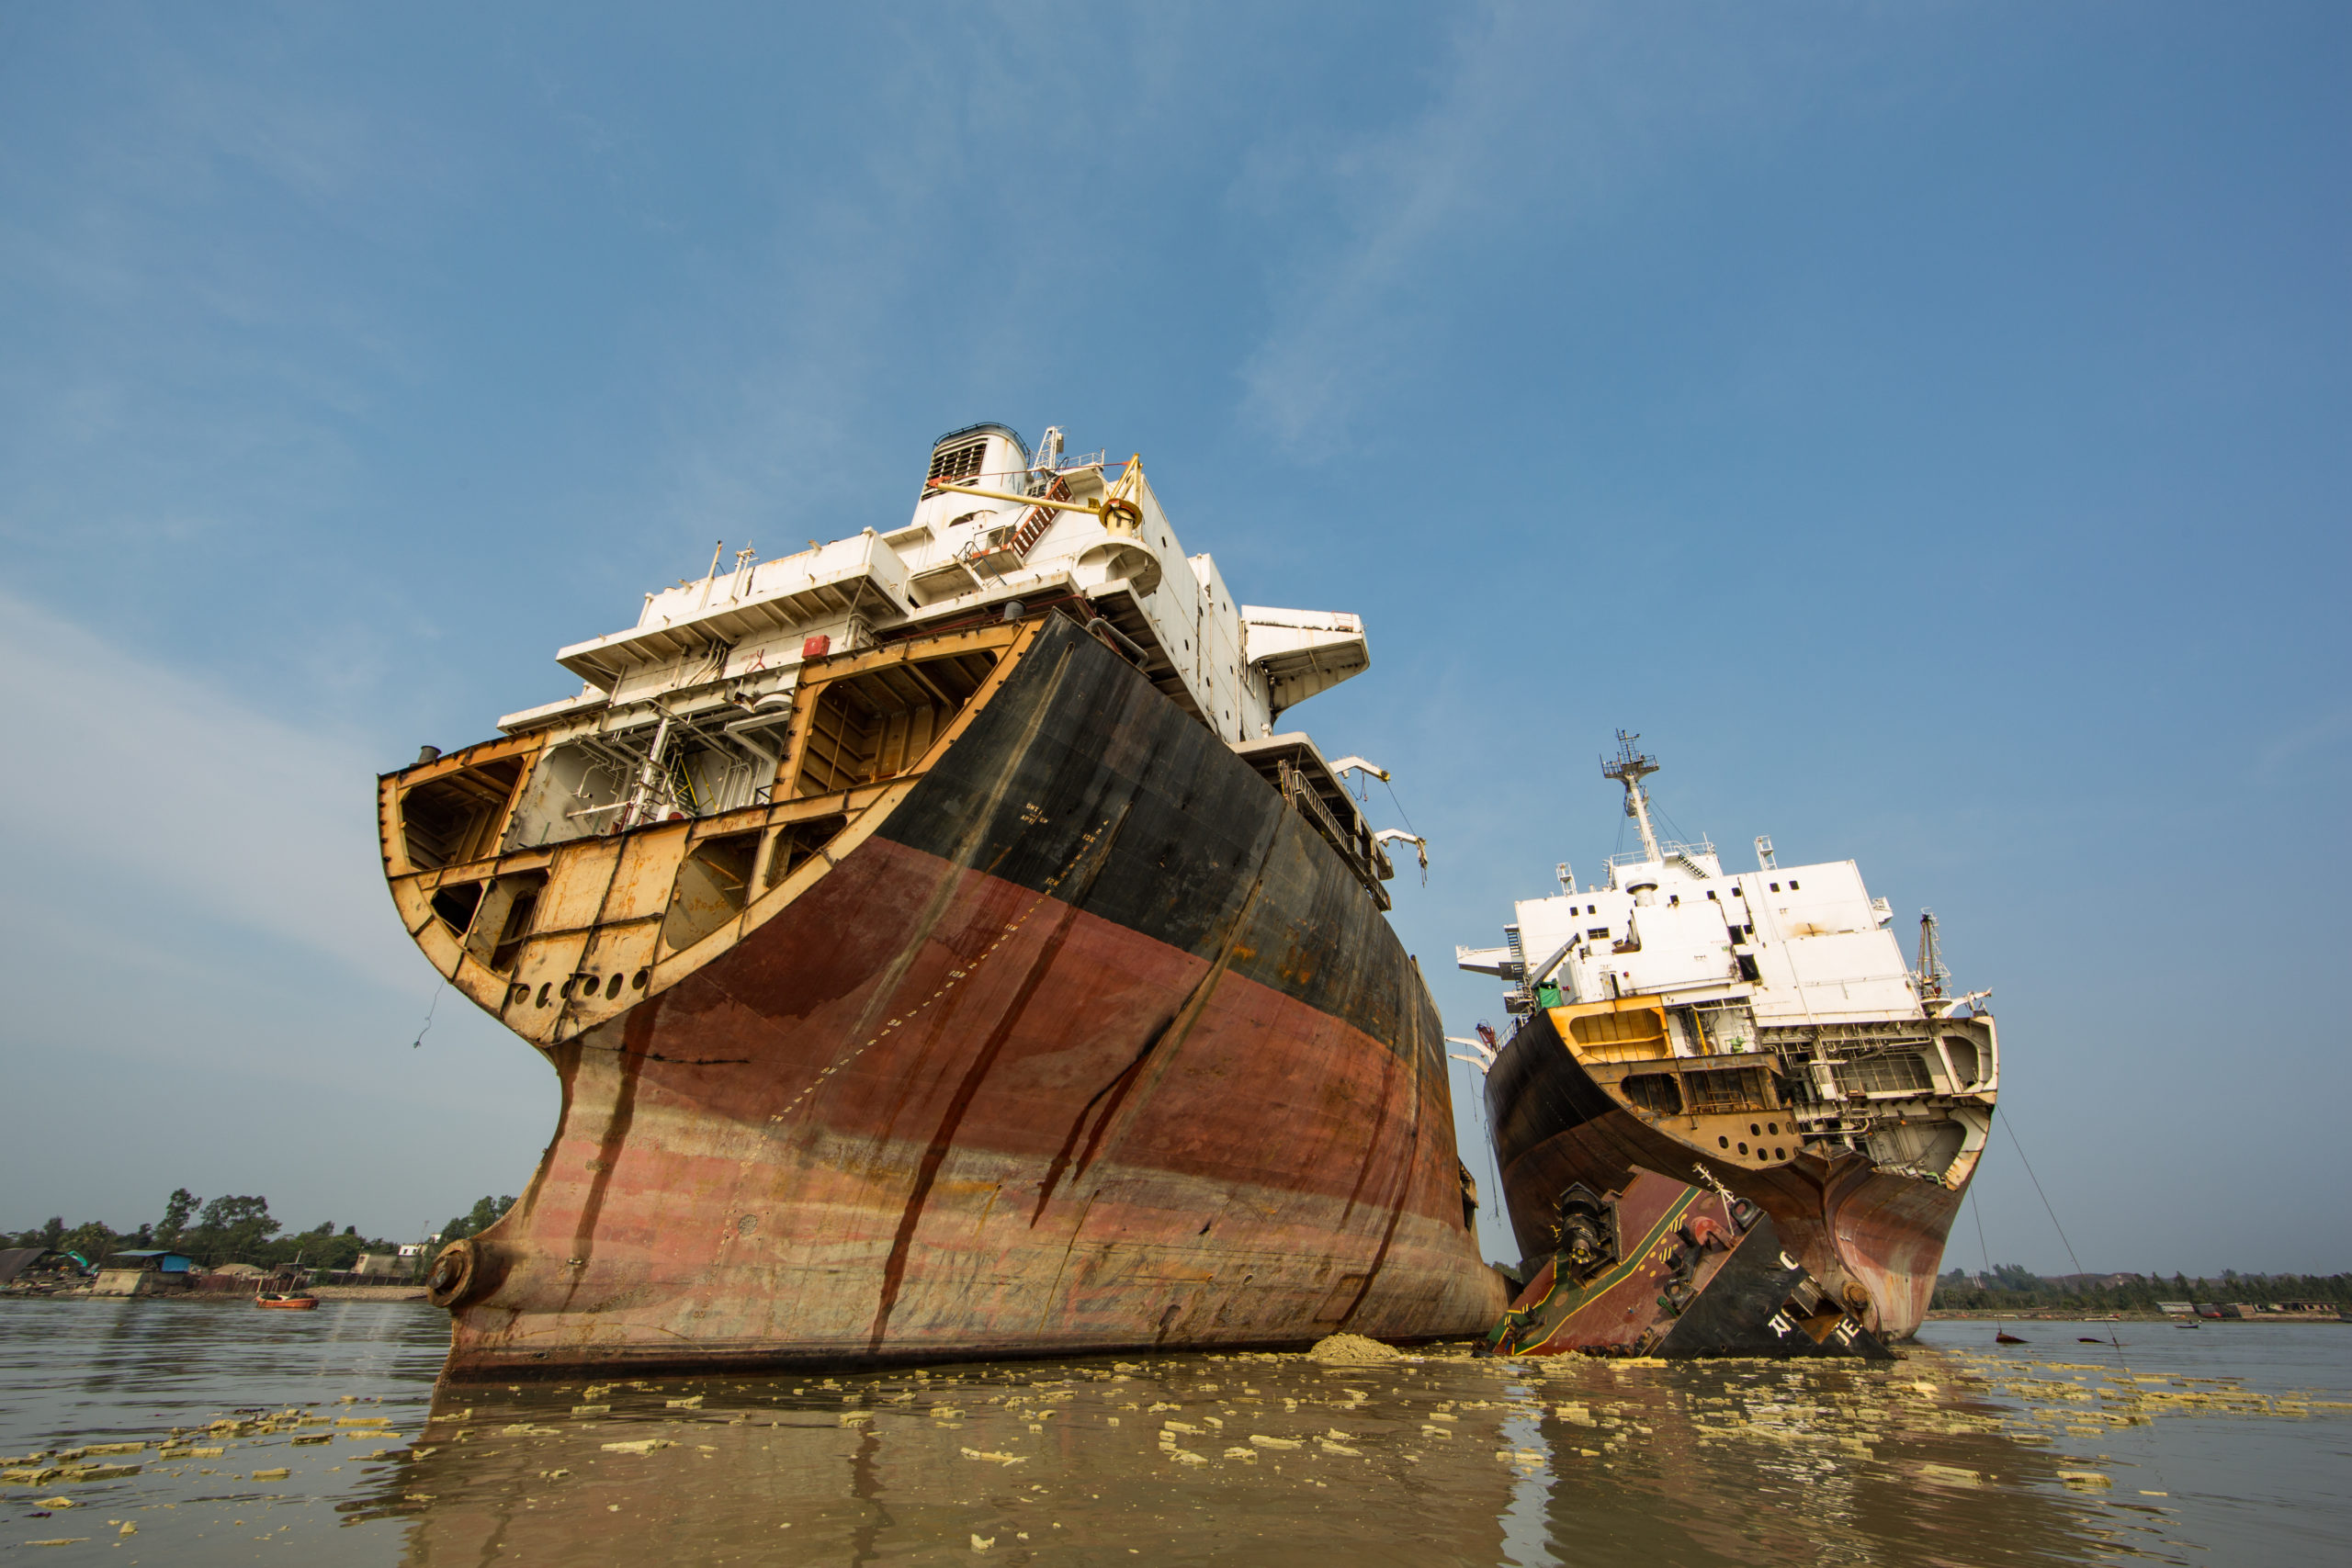 Partially broken down ships in Chittagong, Bangladesh